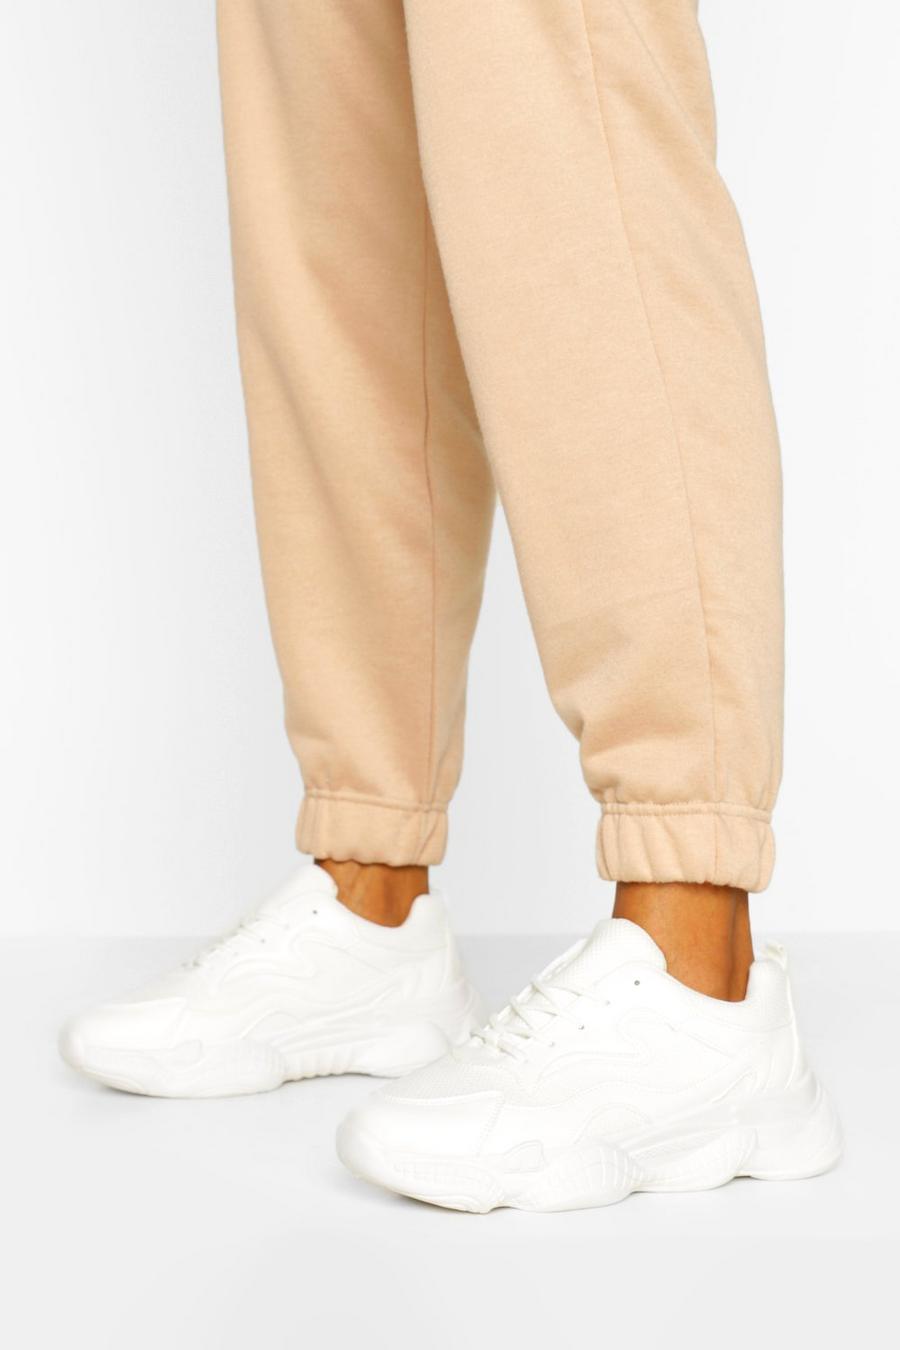 Scarpe da ginnastica a calzata ampia con suola spessa, Bianco blanco